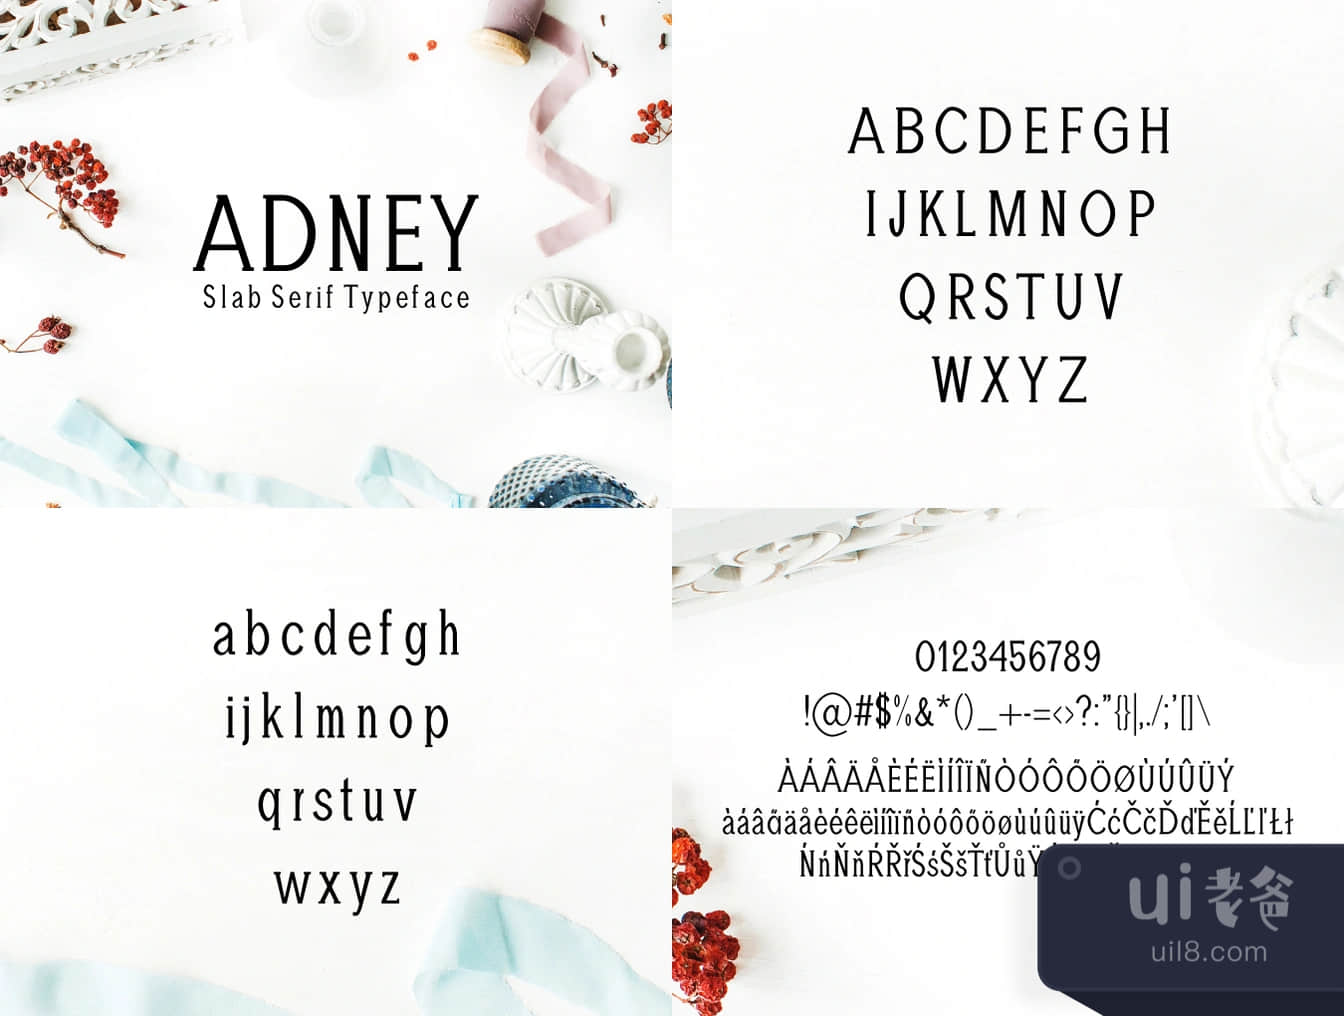 阿德尼板块式样的字体 (Adney Slab Serif Typeface)插图